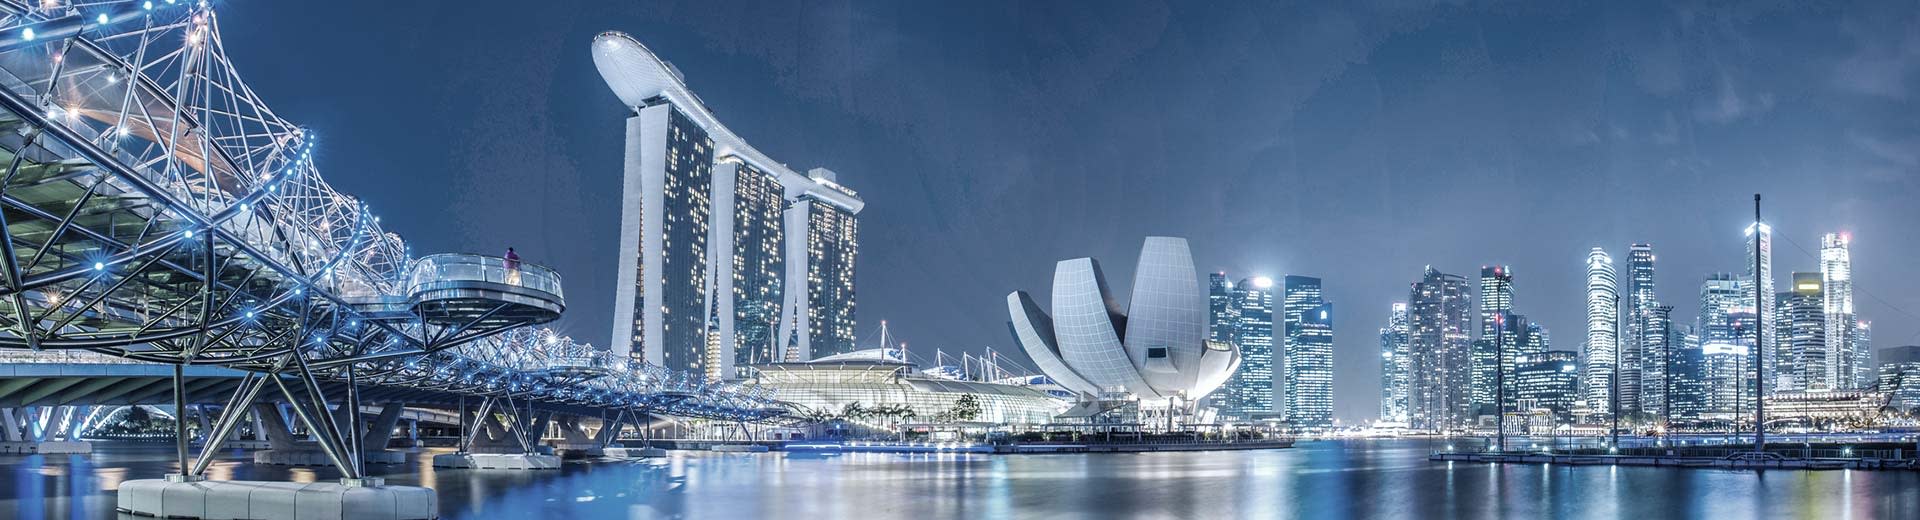 La metrópolis moderna de Singapur por la noche, con enormes rascacielos y puentes que iluminan el cielo.